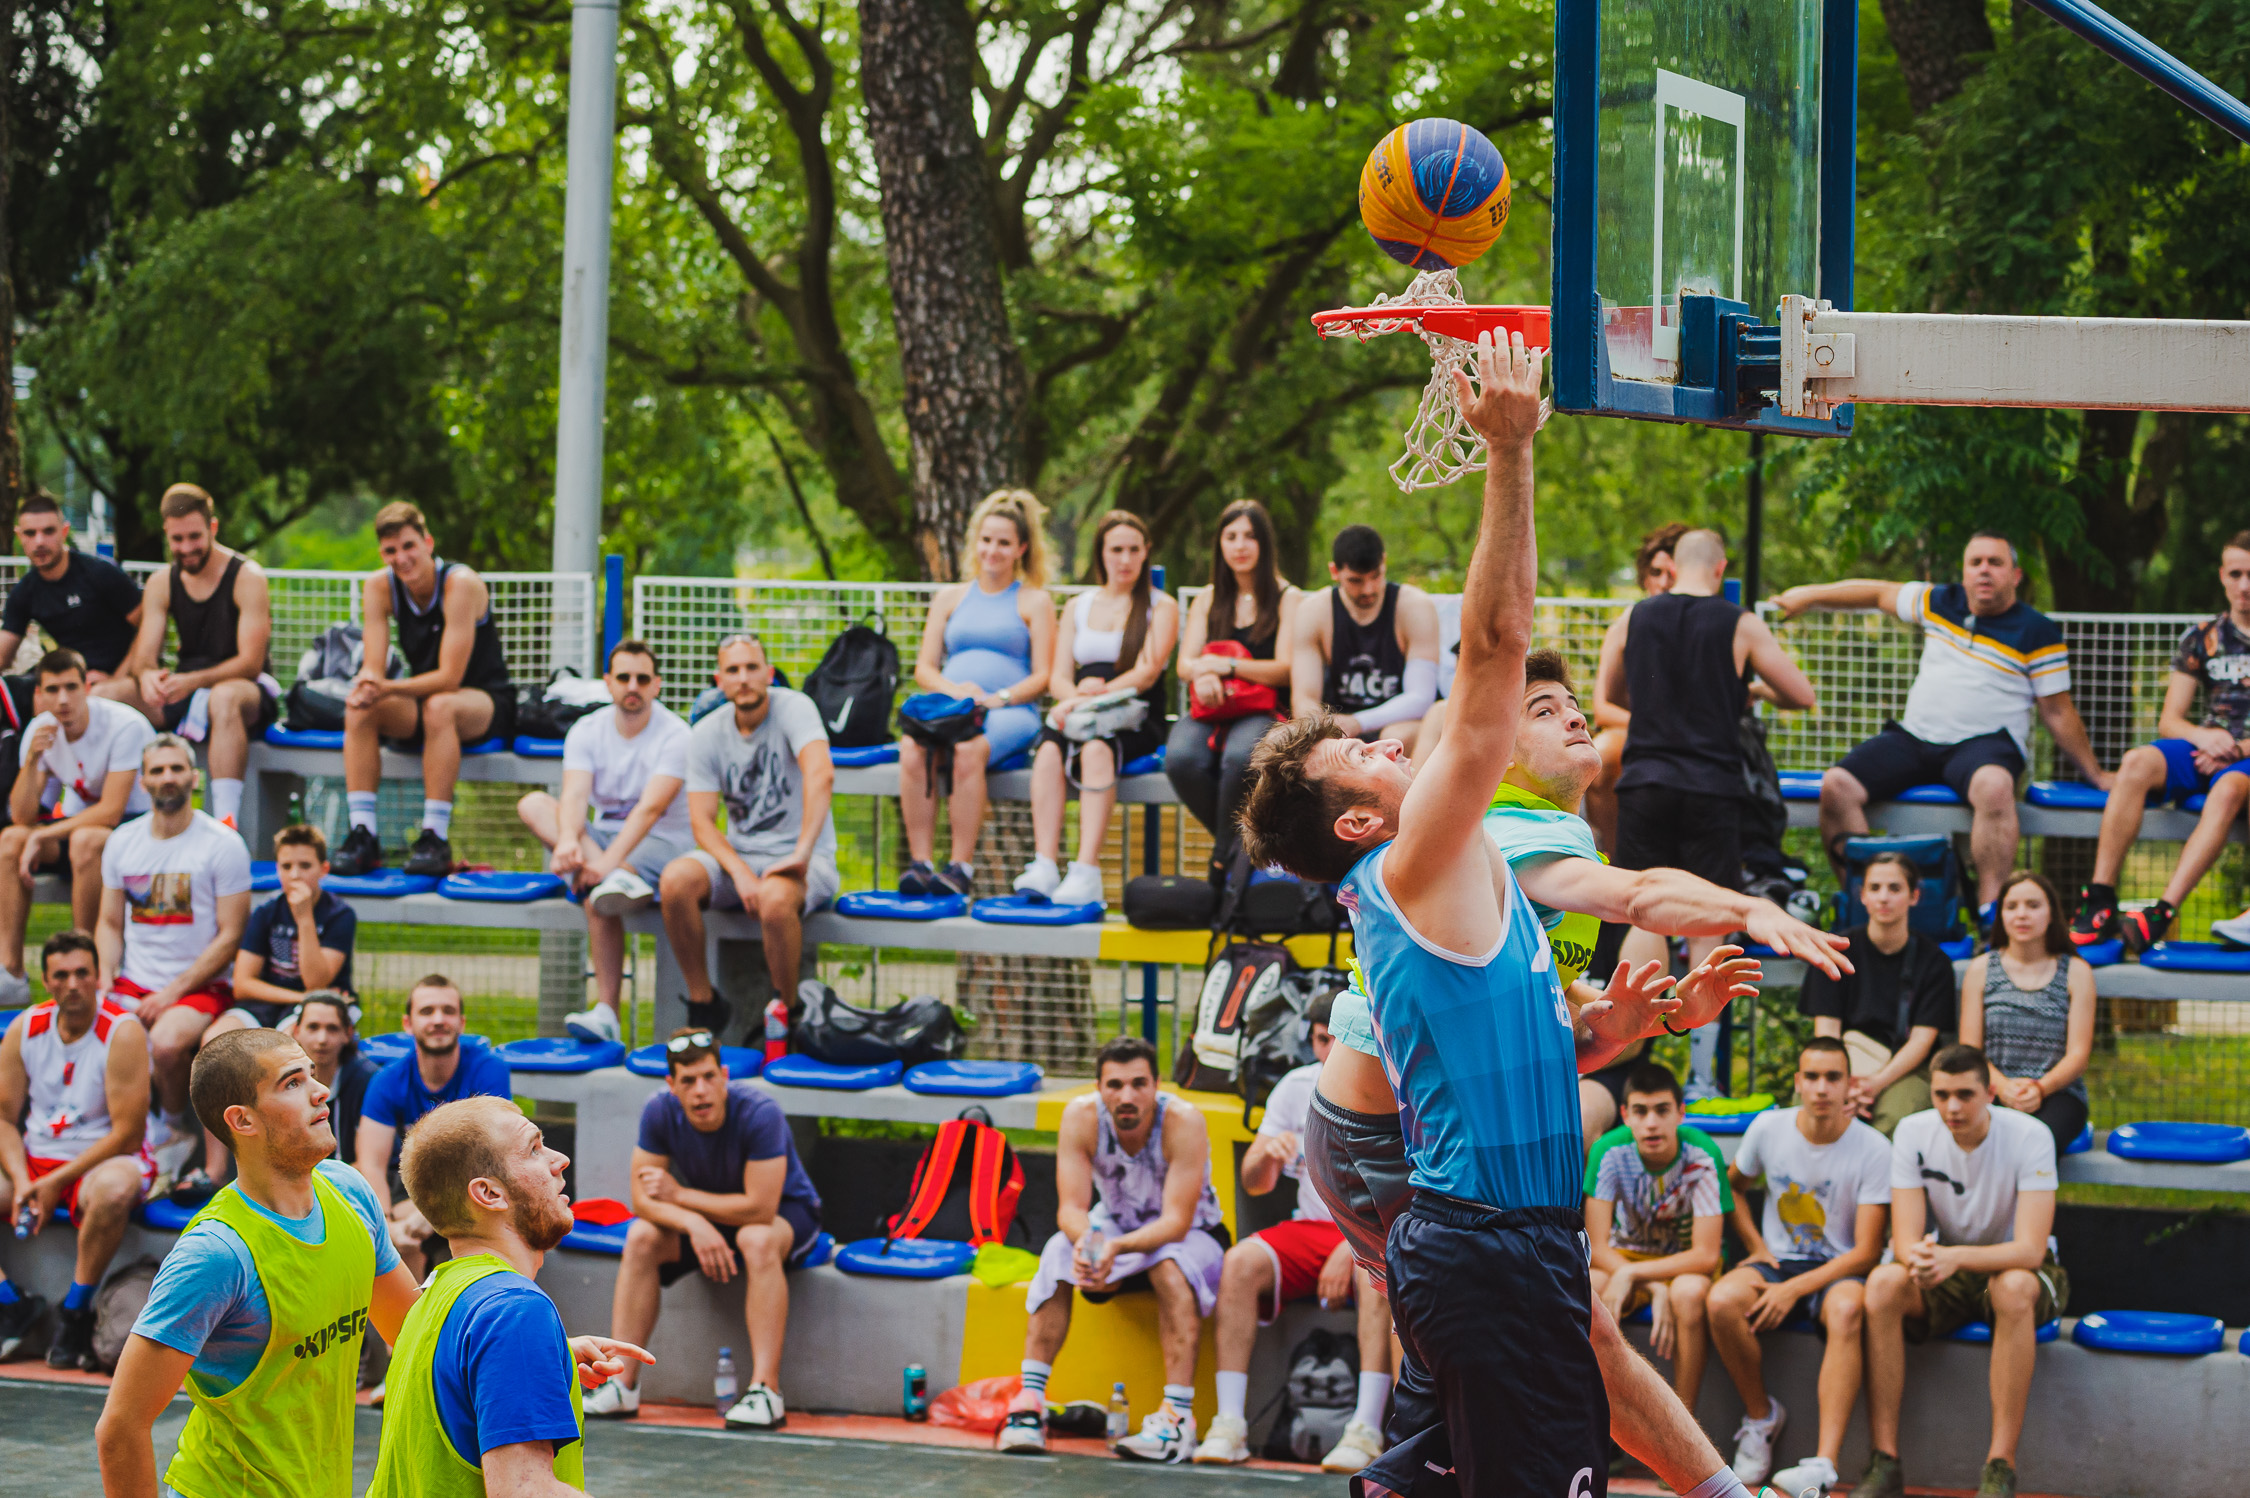 ,,Basket u mom kvartu'' dobio prvog šampiona: Old pub pobjednik spektakla u Njegoševom parku!